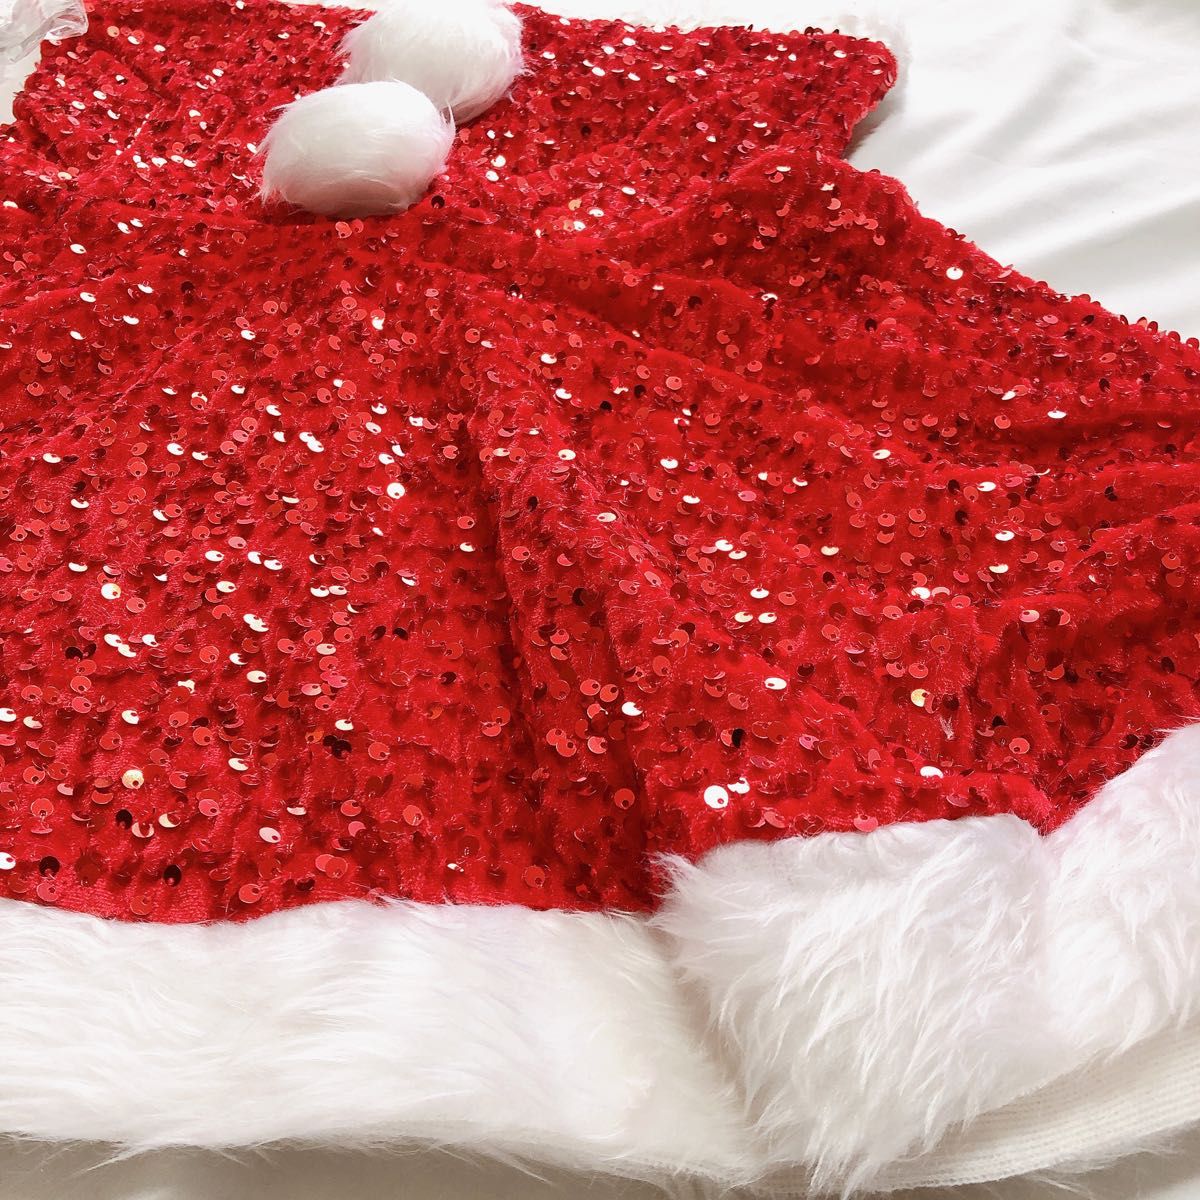 サンタガール クリスマス コスプレ サンタ バニーガール ドレス コスチューム 衣装 サンタコス キラキラ 目立つ ダンス 可愛い